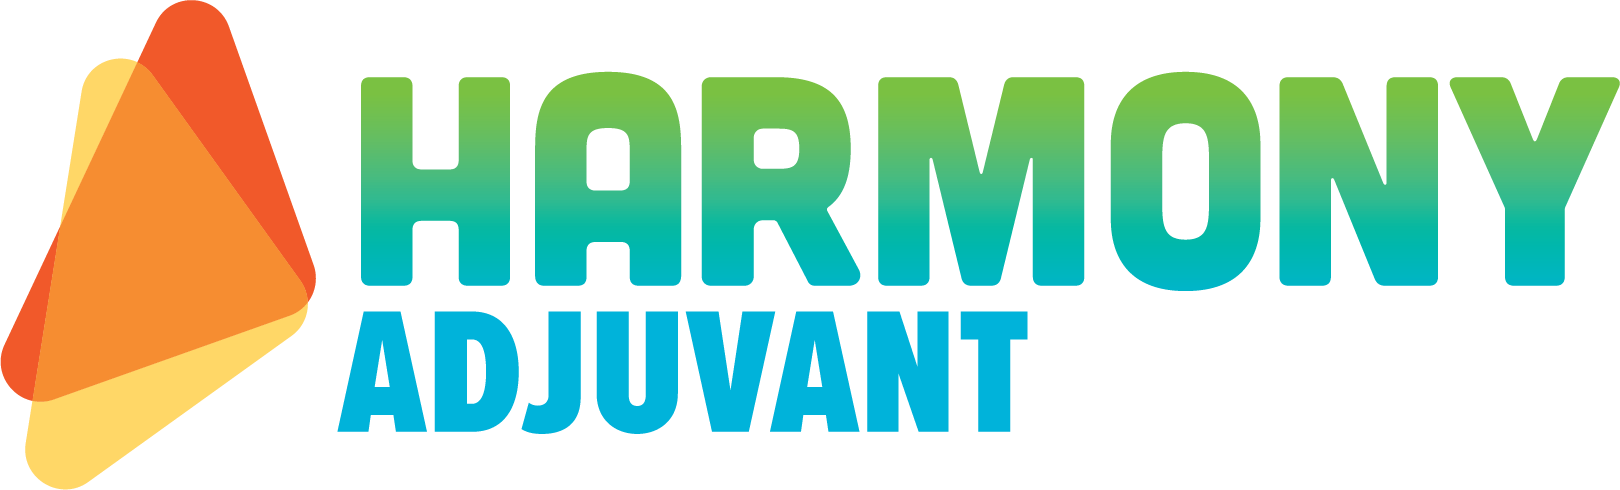 Harmony-Adjuvant logo in color